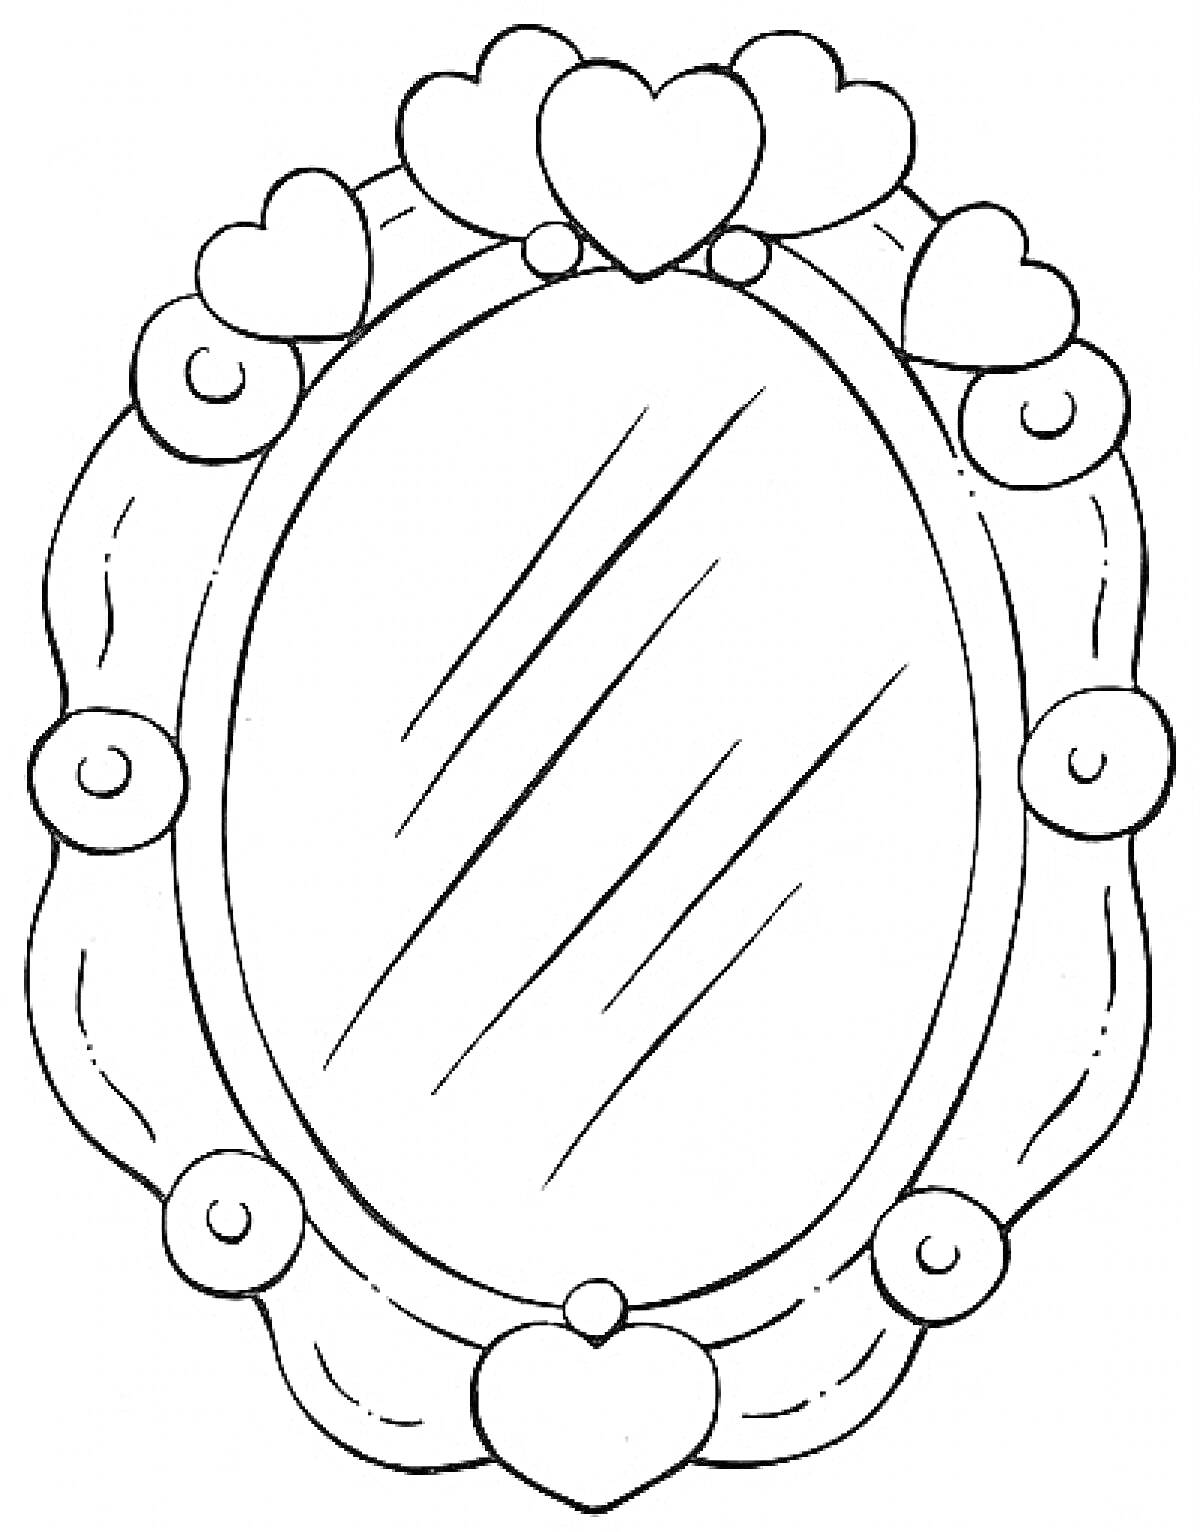 Раскраска зеркало с узорной рамкой, сердечками и круглым декором